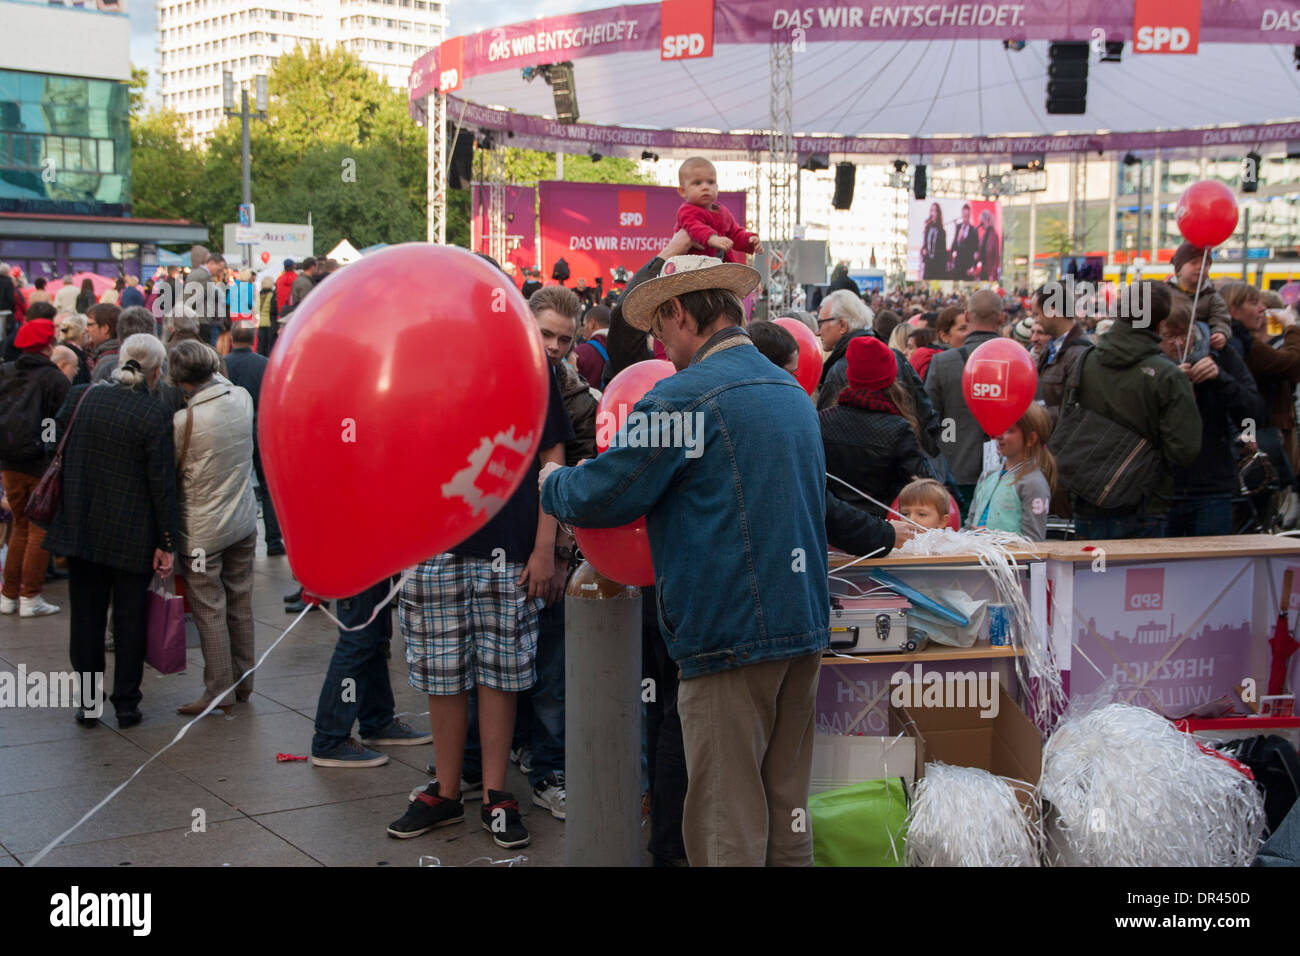 Pre-electoral de partido del SPD en Alexanderplatz en Berlín. Foto de stock